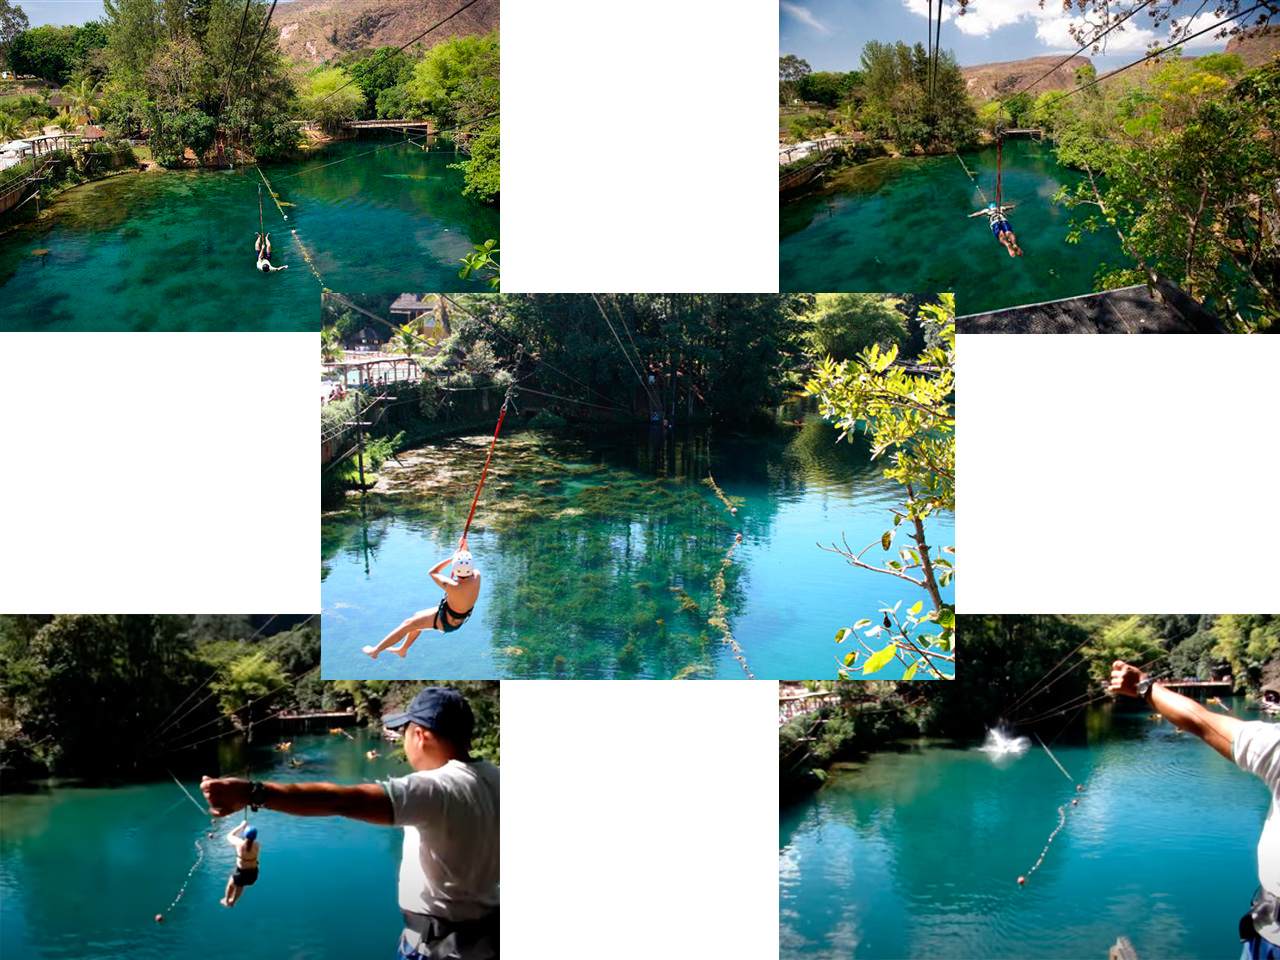 Essas são algumas imagens da Acqua Tirolesa no Hot Park